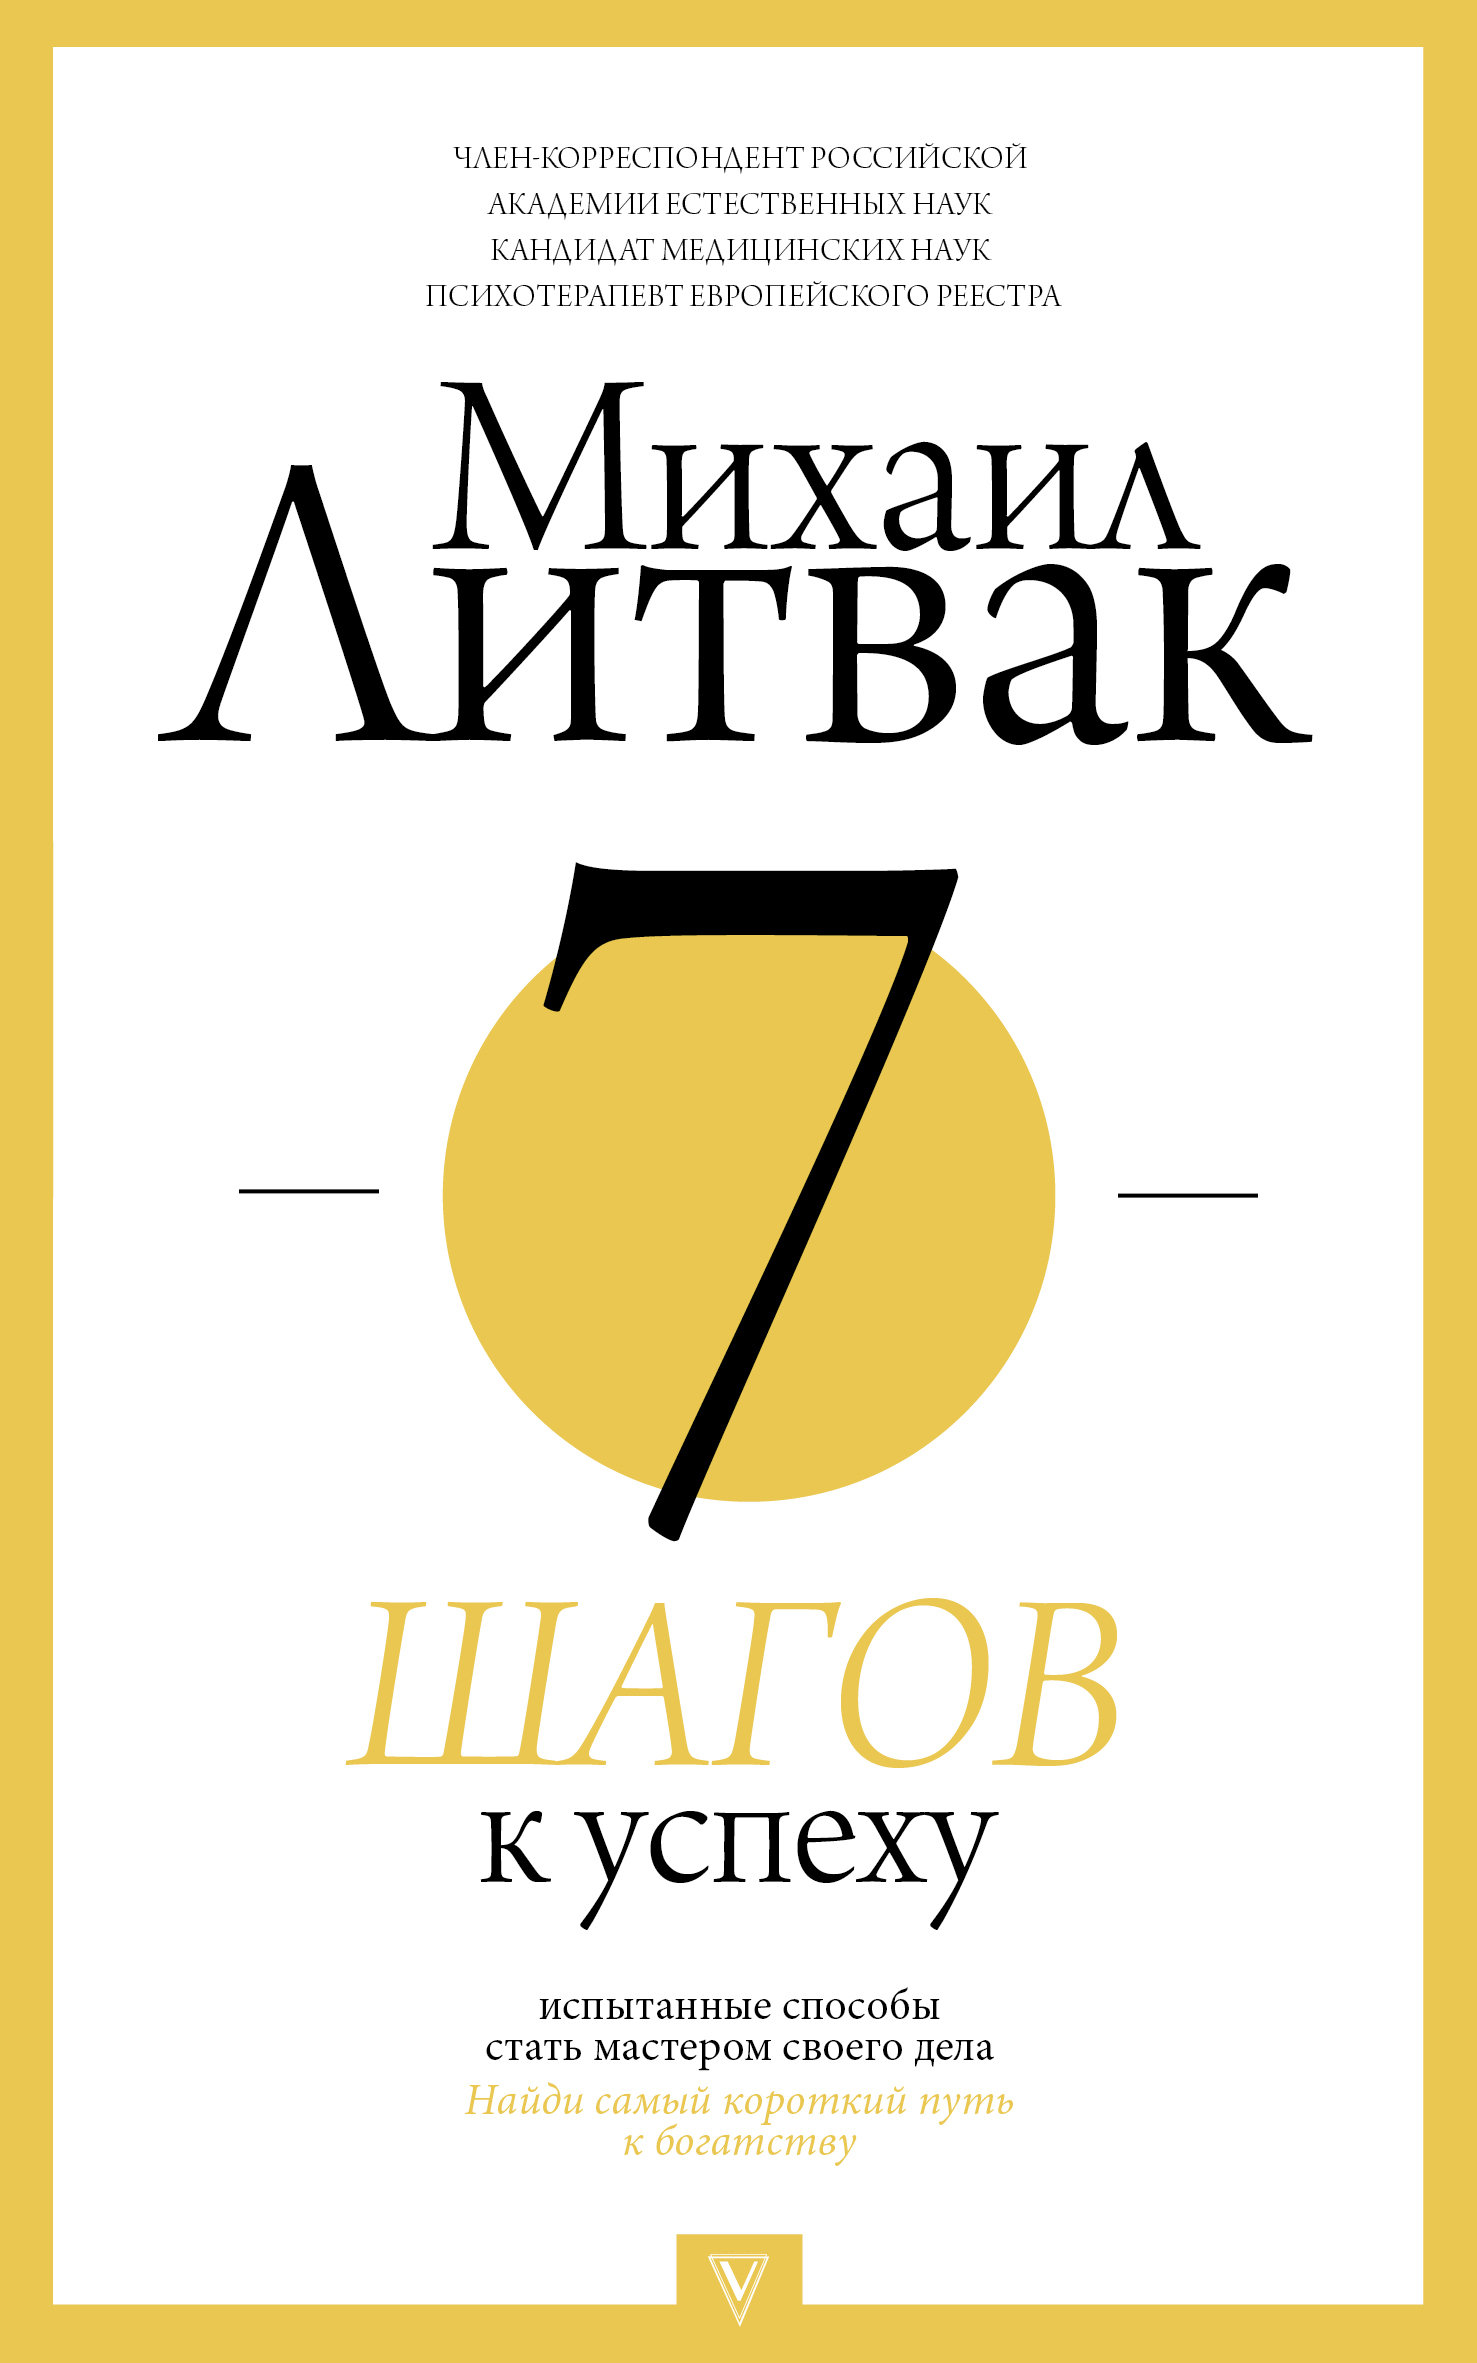 14 друзей хунты - читать бесплатно онлайн полную версию книги автора Виктор Трегубов (Армия) #1